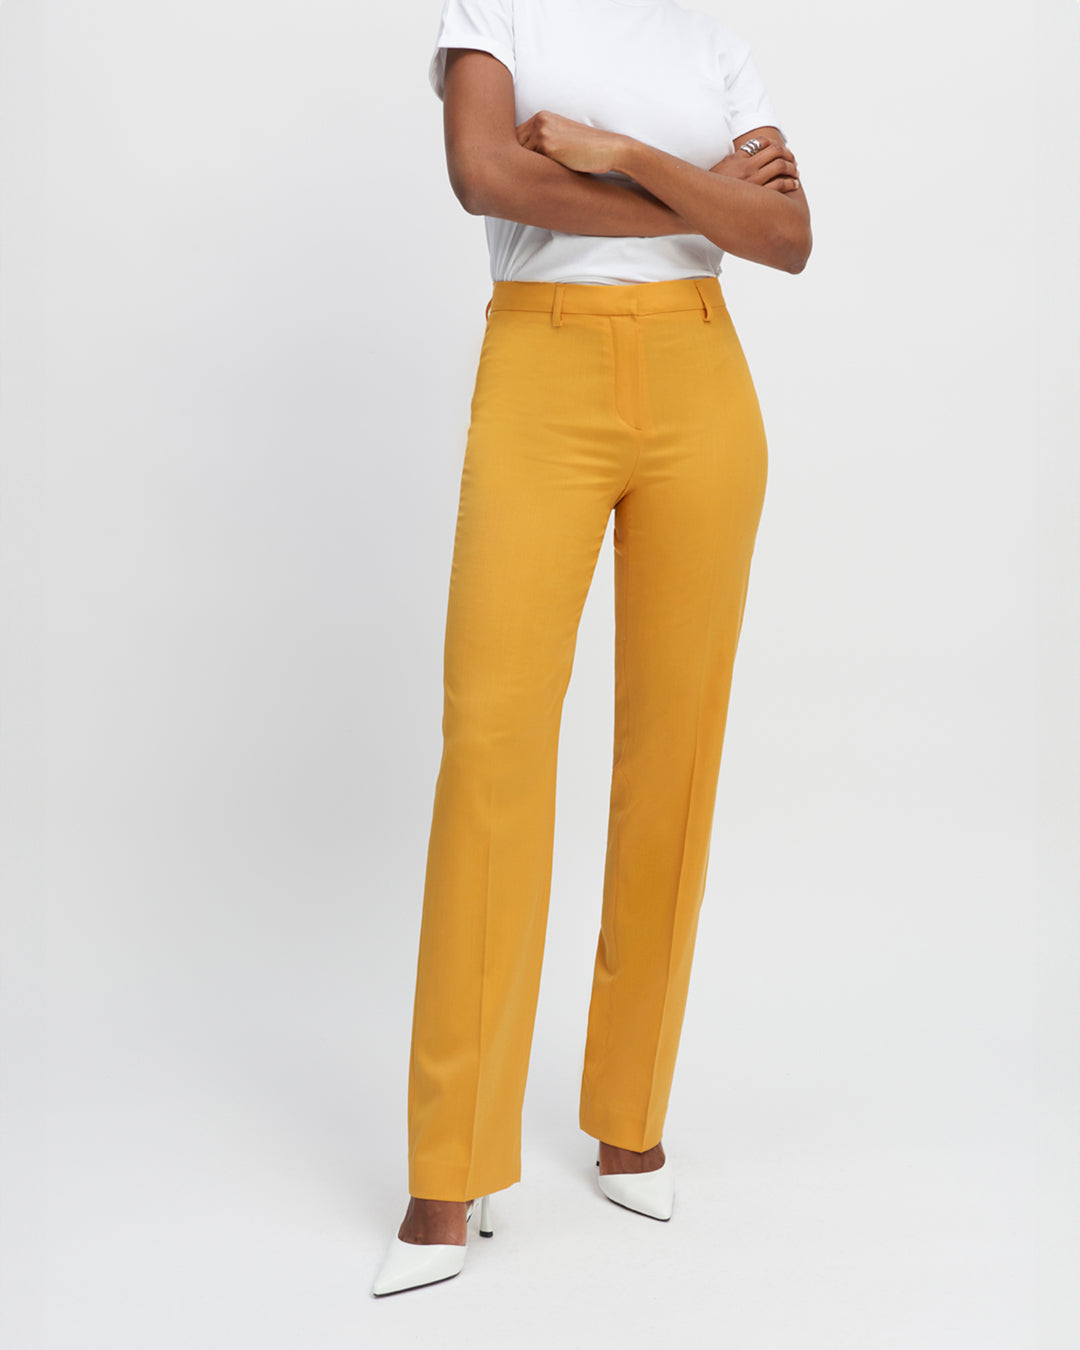 Pantalon-jaune-Coupe-droite-Taille-haute-Plis-devant-Fermeture-zip-avec-crochet-17H10-tailleurs-pour-femme-paris-